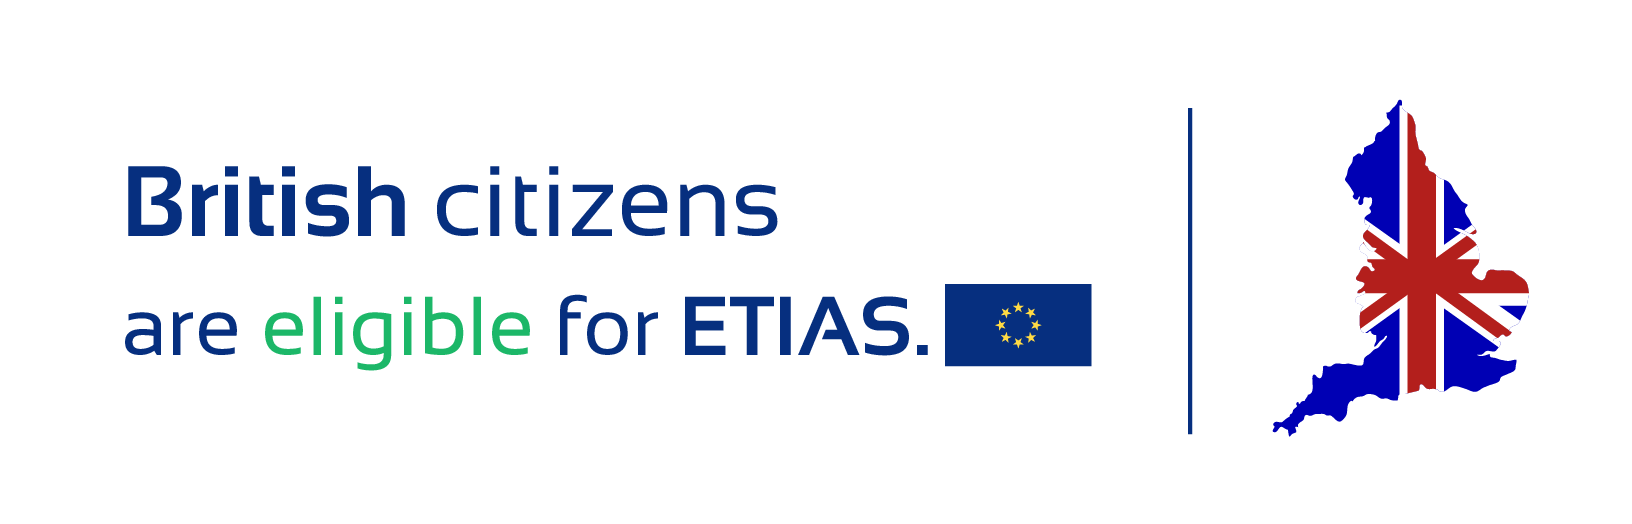 British citizens are eligible for ETIAS